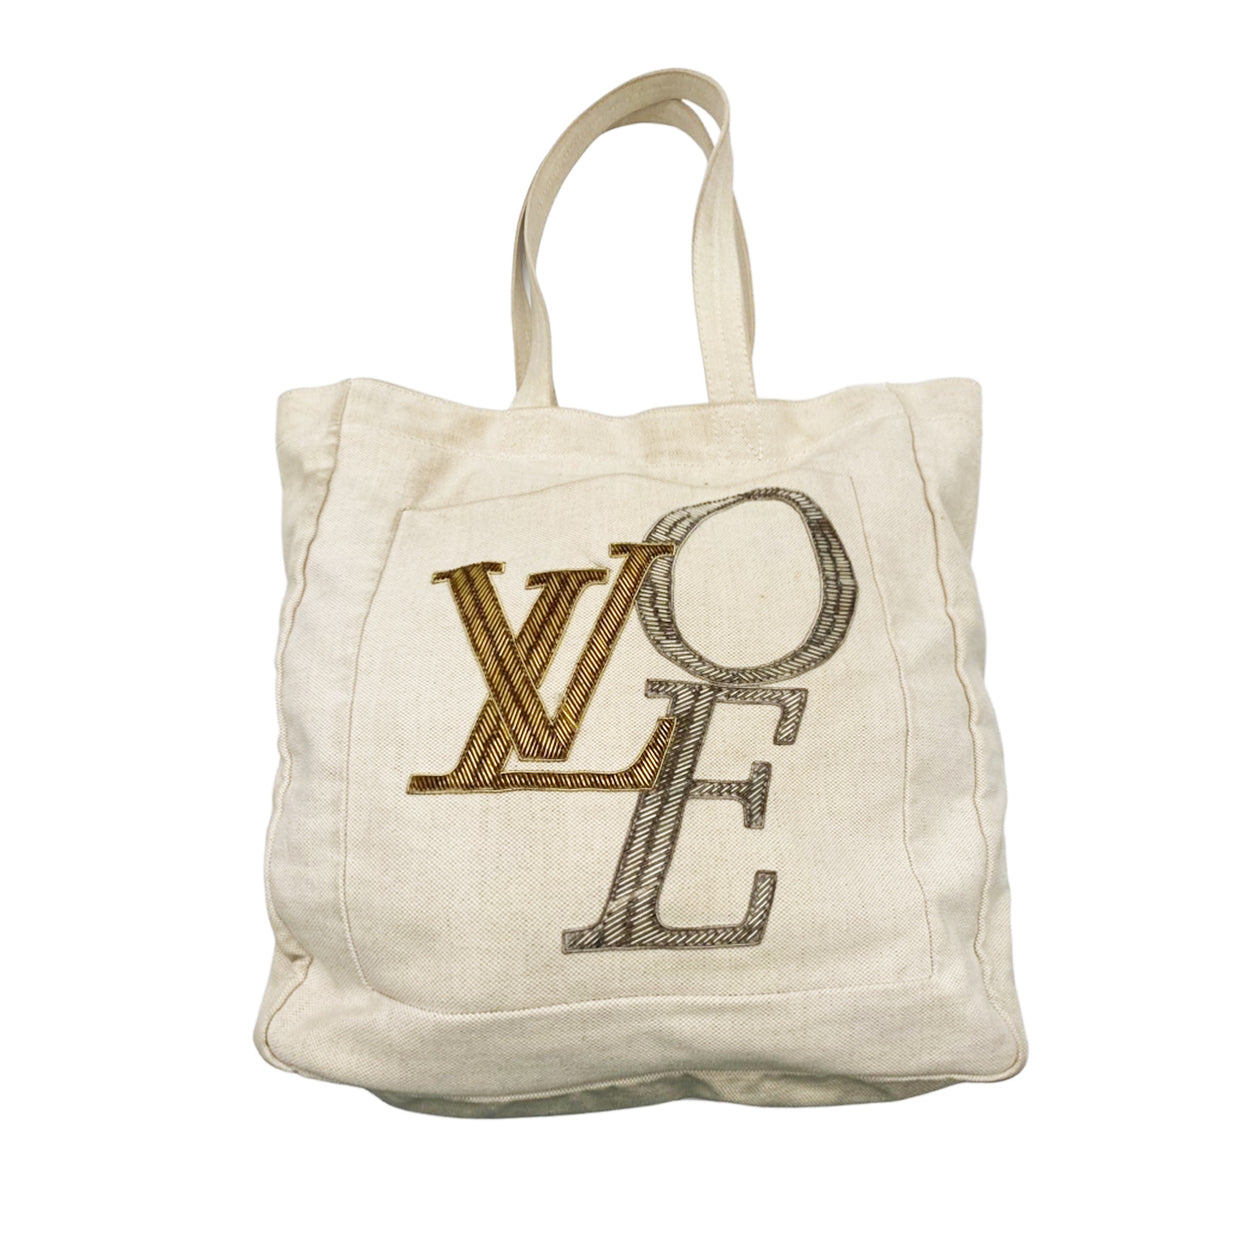 Louis Vuitton - Authenticated Handbag - Plastic White Plain for Women, Good Condition